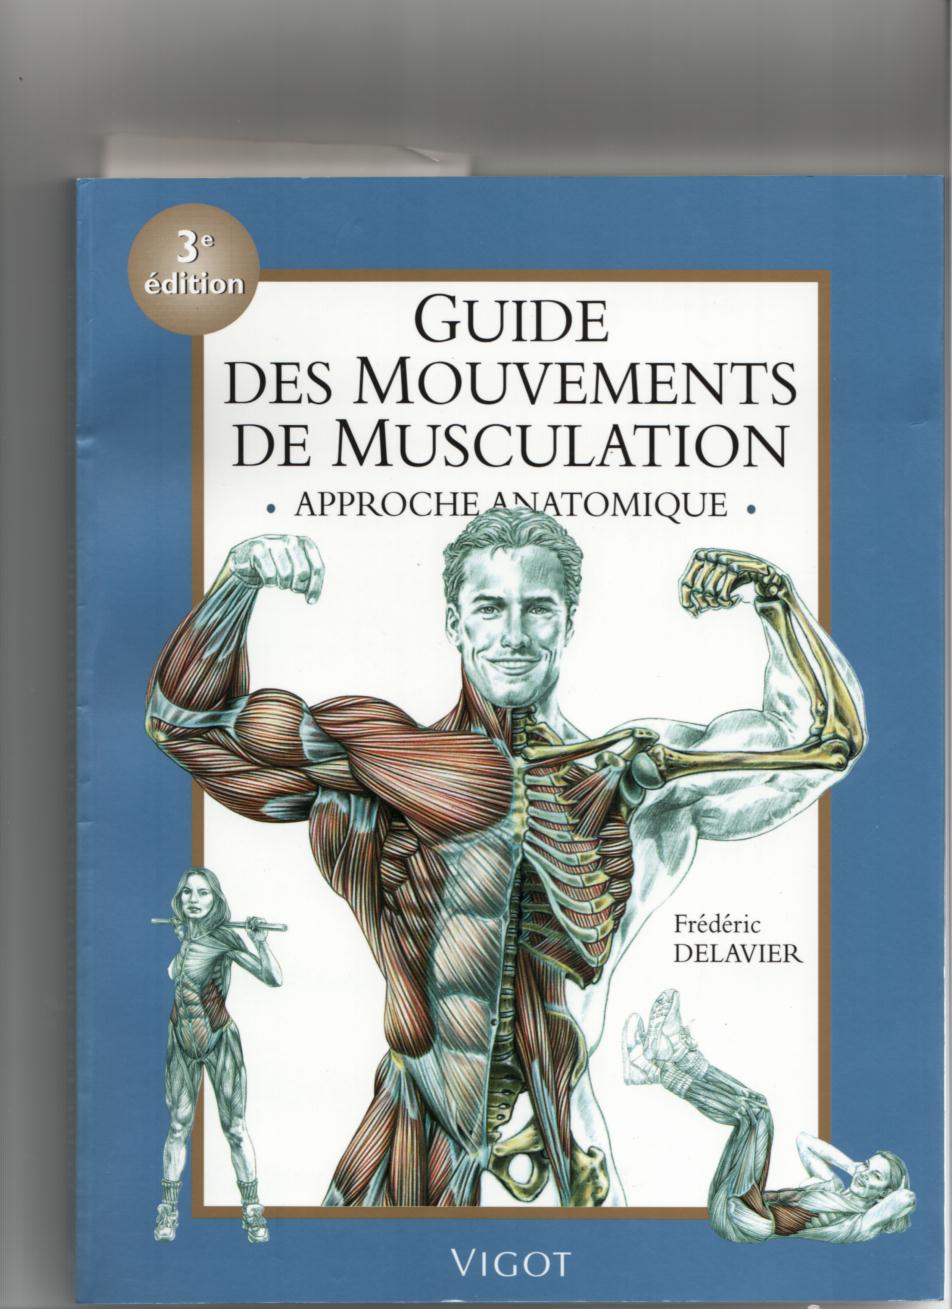 Delavier's Guide des Mouvements